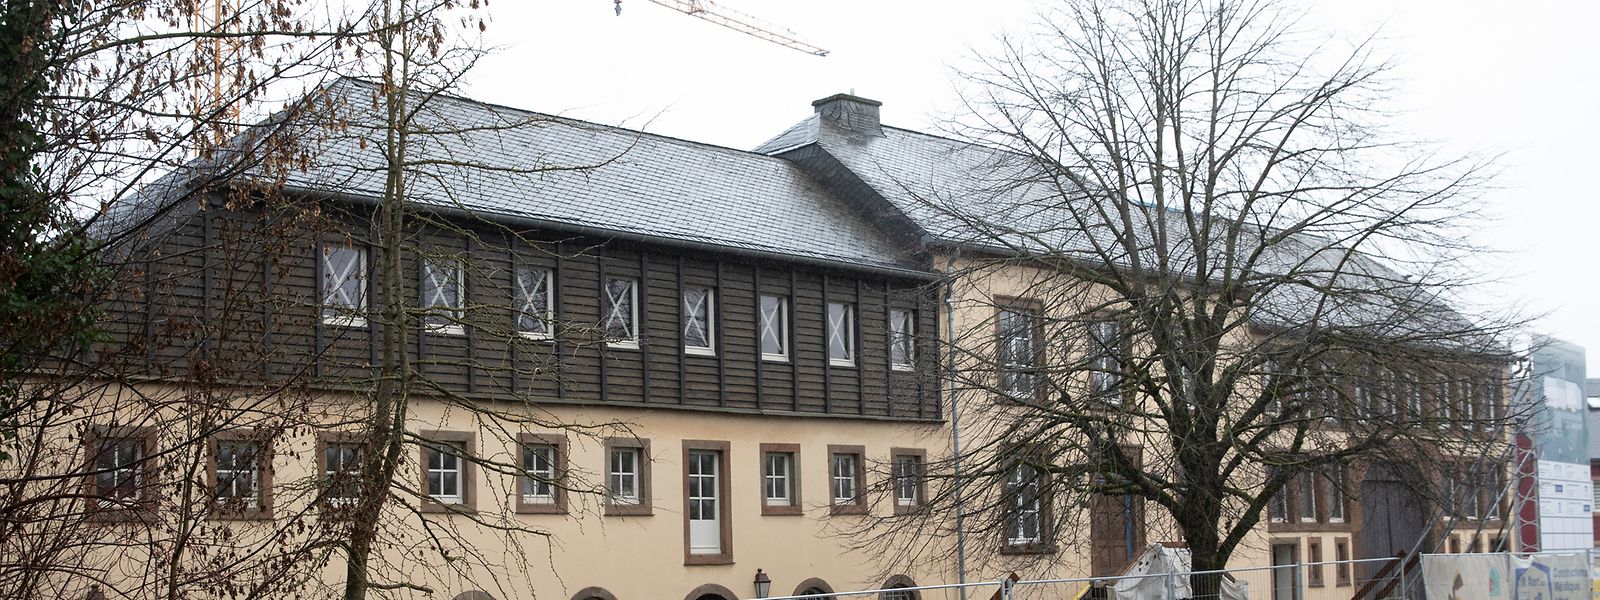 Das Wäissen-Haus samt seiner angrenzenden Gebäude ist gegen Ende des 18. Jahrhunderts gebaut worden.